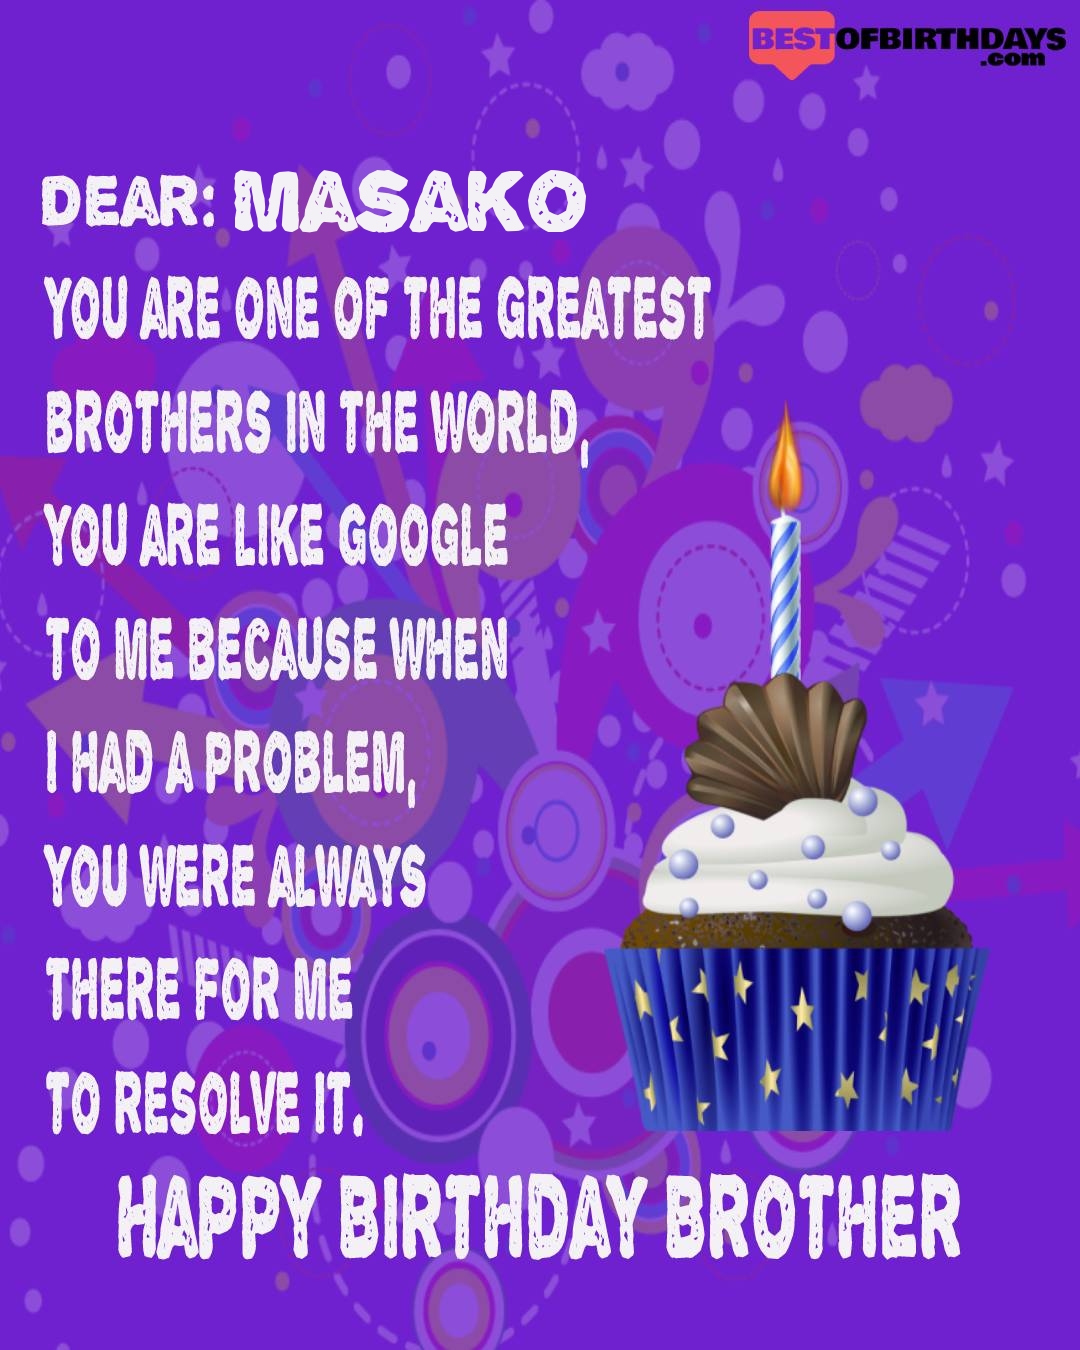 Happy birthday masako bhai brother bro